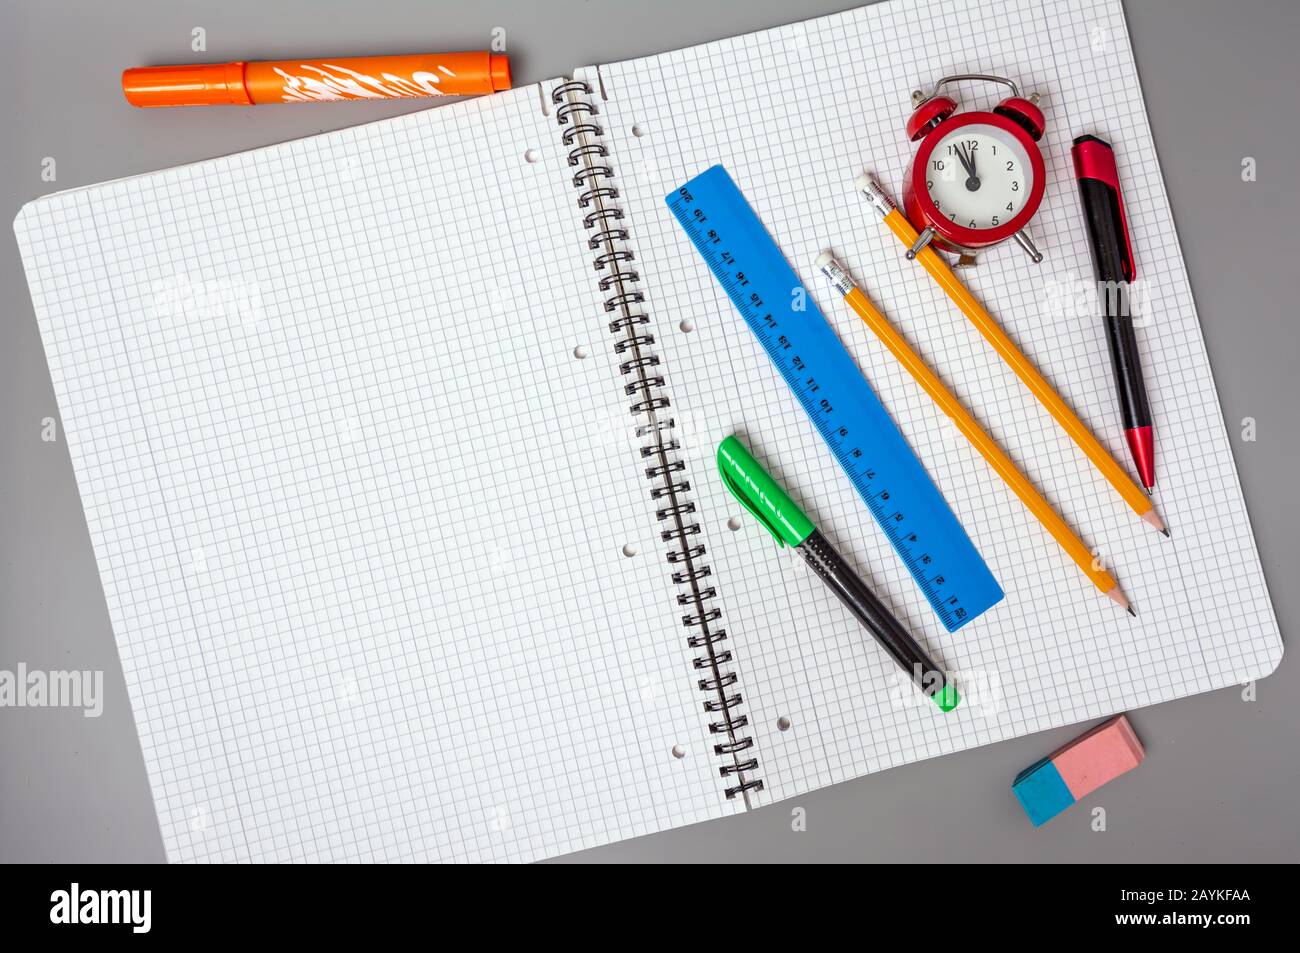 Matite, una penna e un righello si trovano su un notebook aperto. Una sveglia ricorda l'ora. Ufficio. Forniture scolastiche. Foto Stock